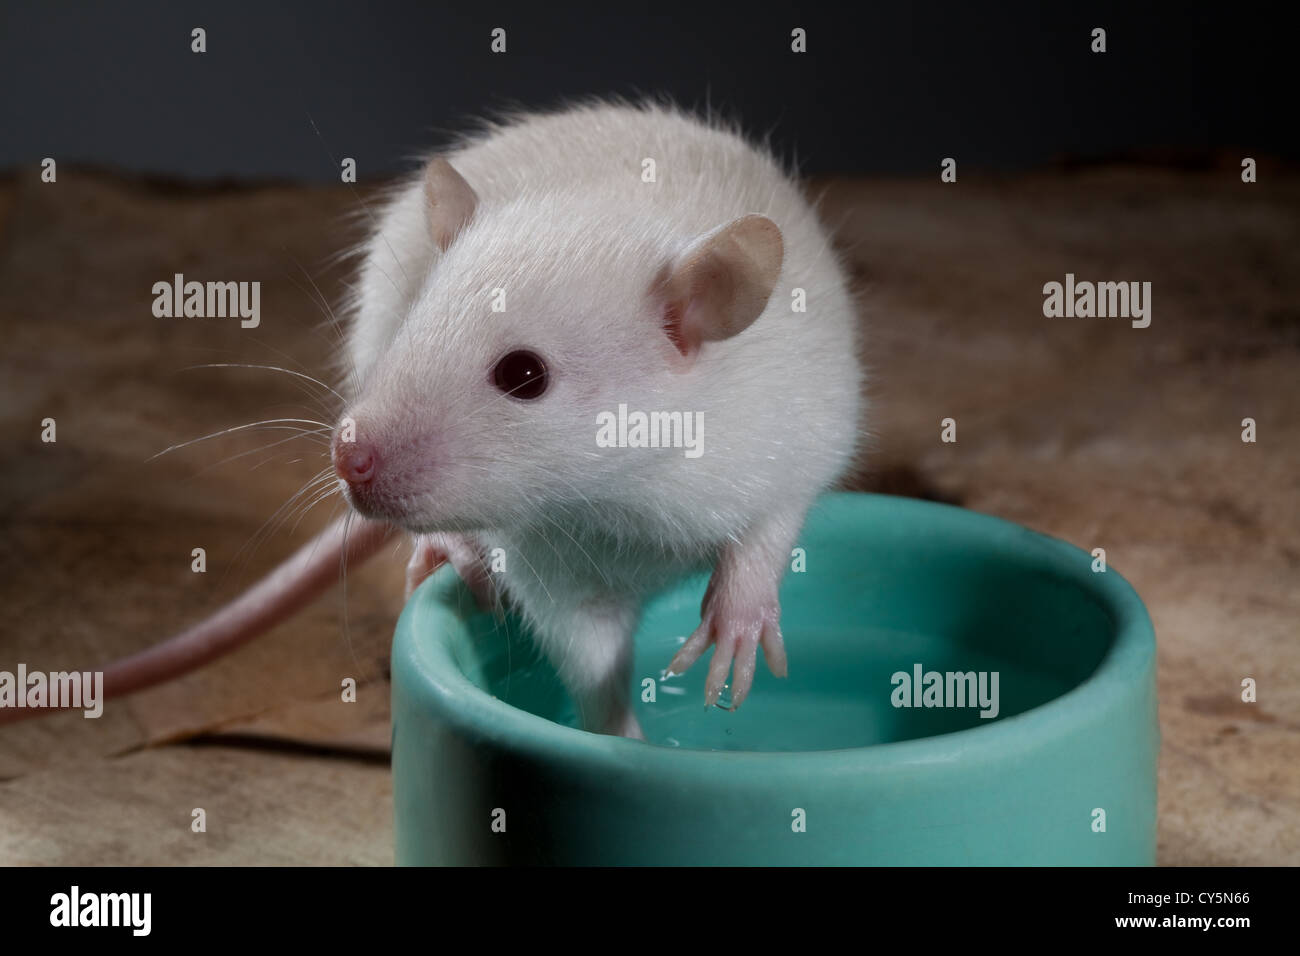 Albino juvenil rata Rattus norvegicus. Sentada en el borde de un recipiente de alimentos. Contacto con los ojos. Foto de stock